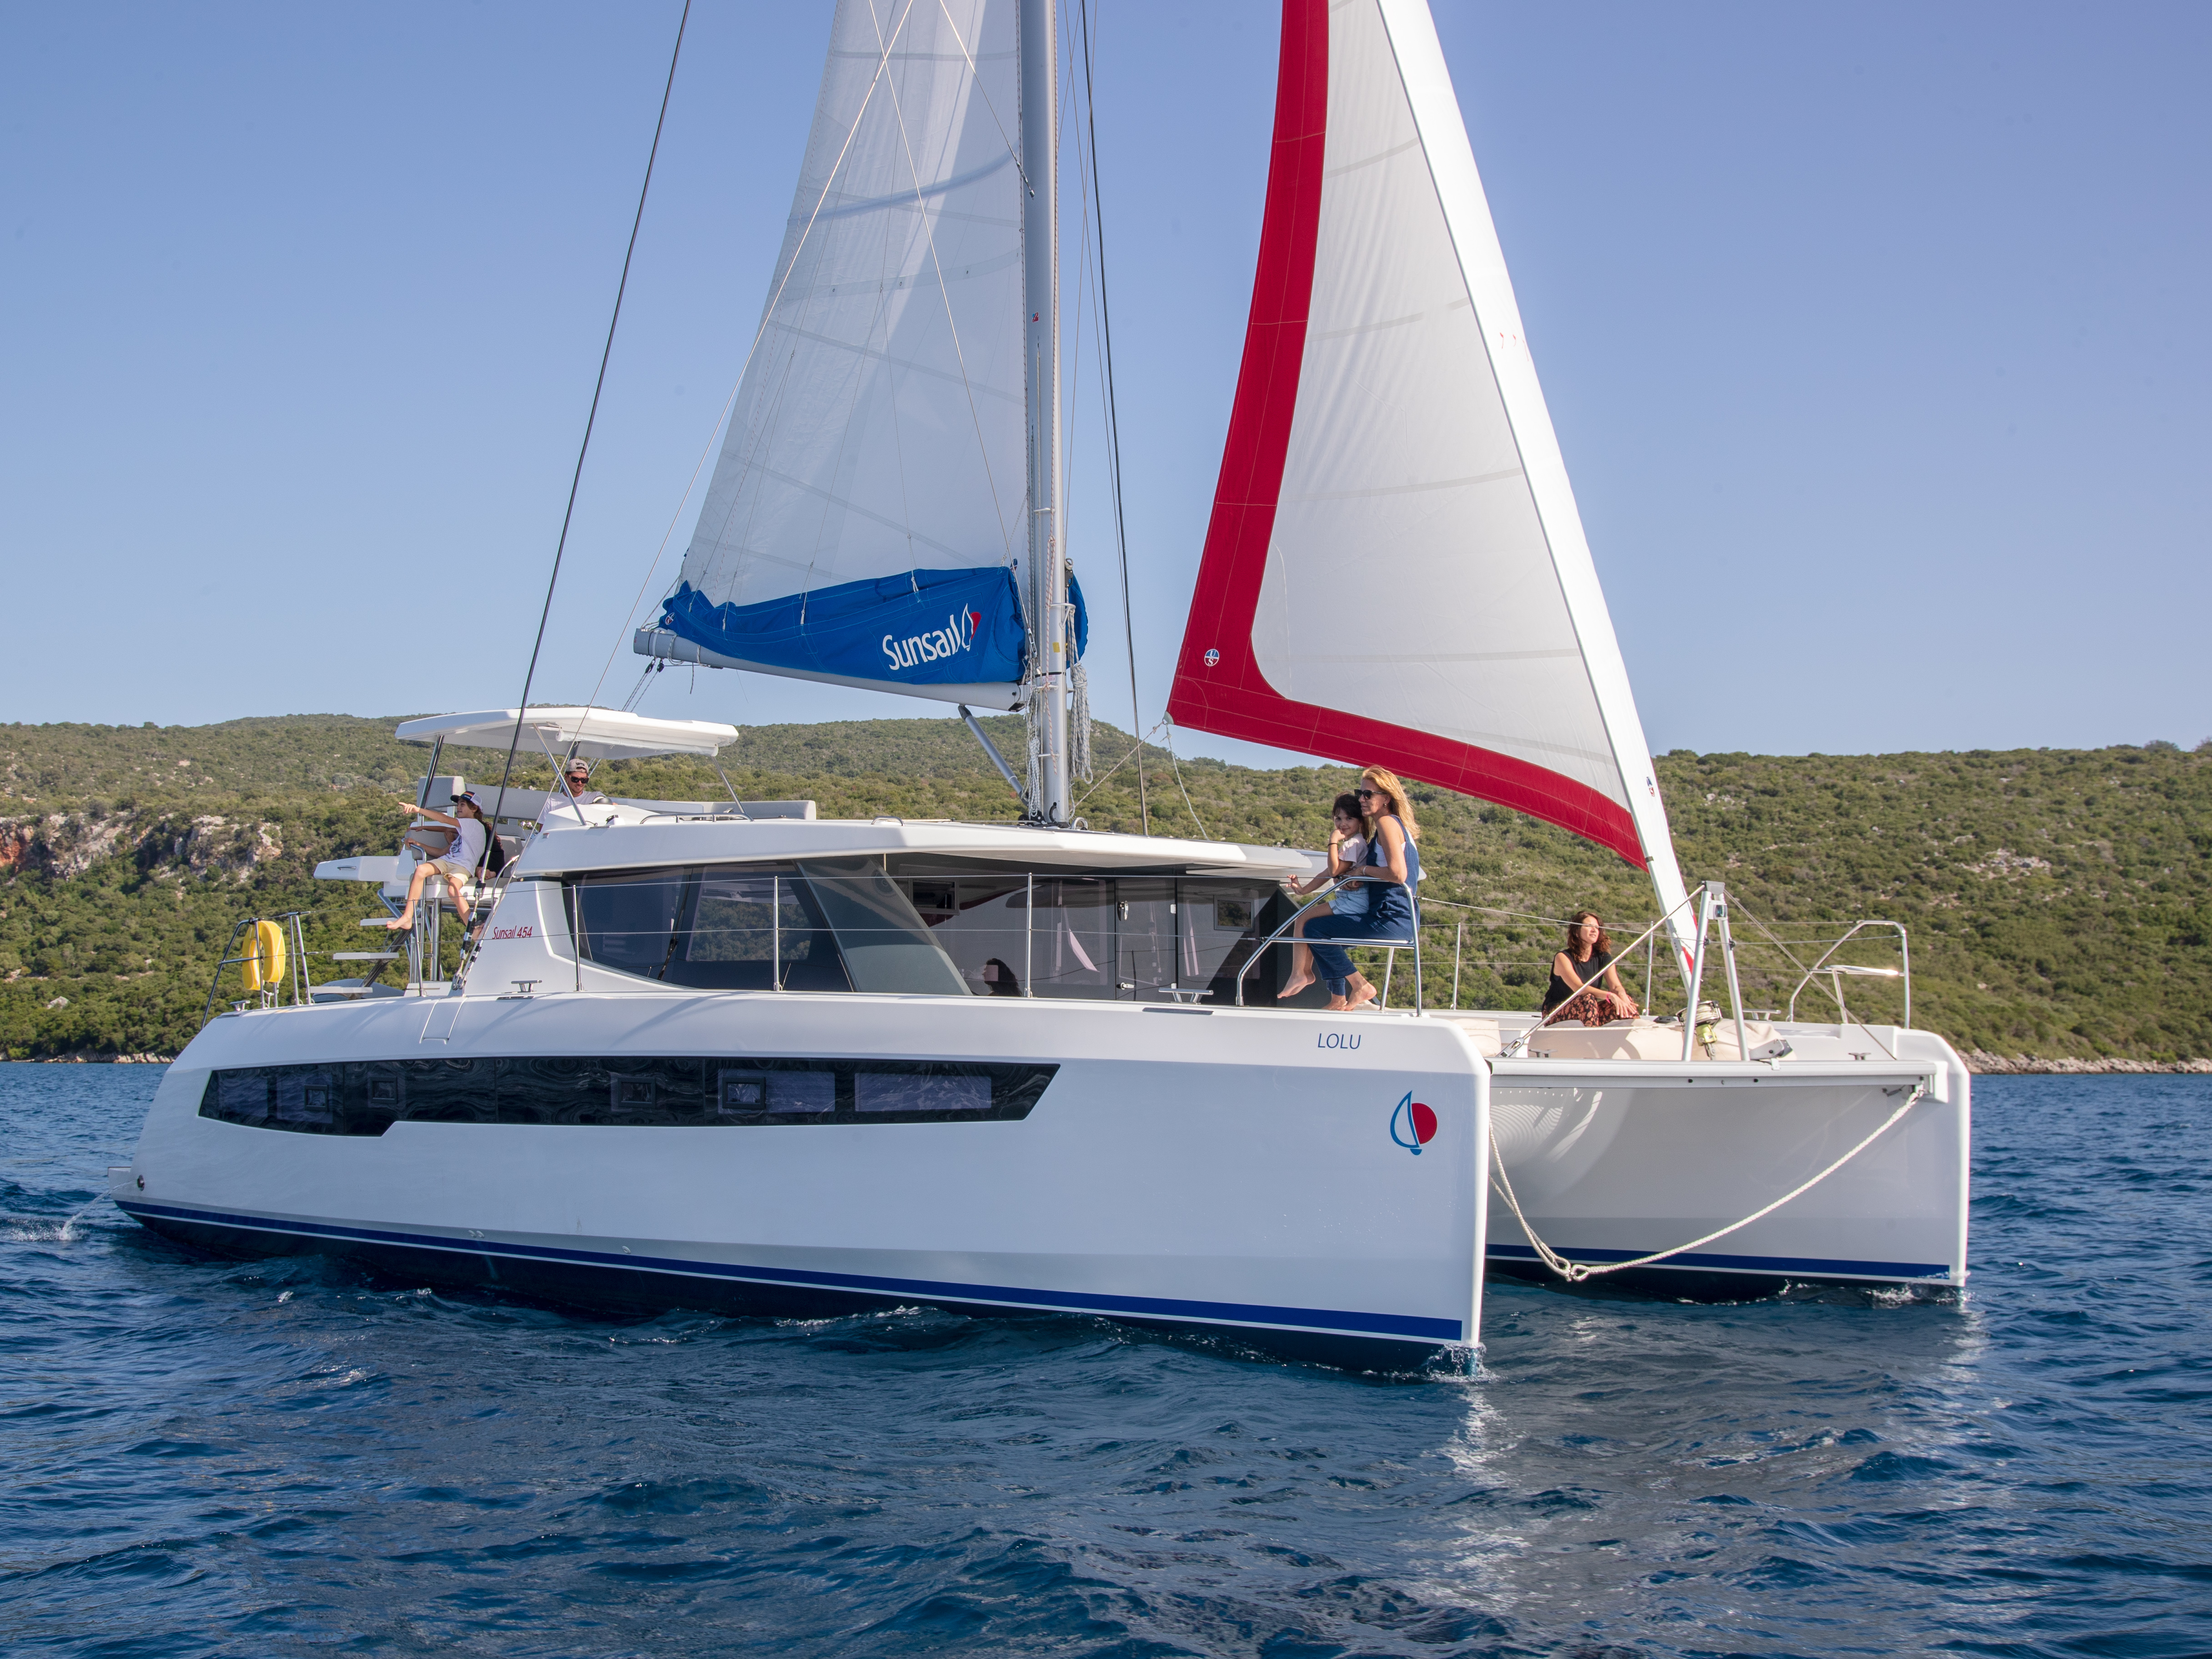 Yacht charter Sunsail 454L - Croatia, Central Dalmatia, Marina